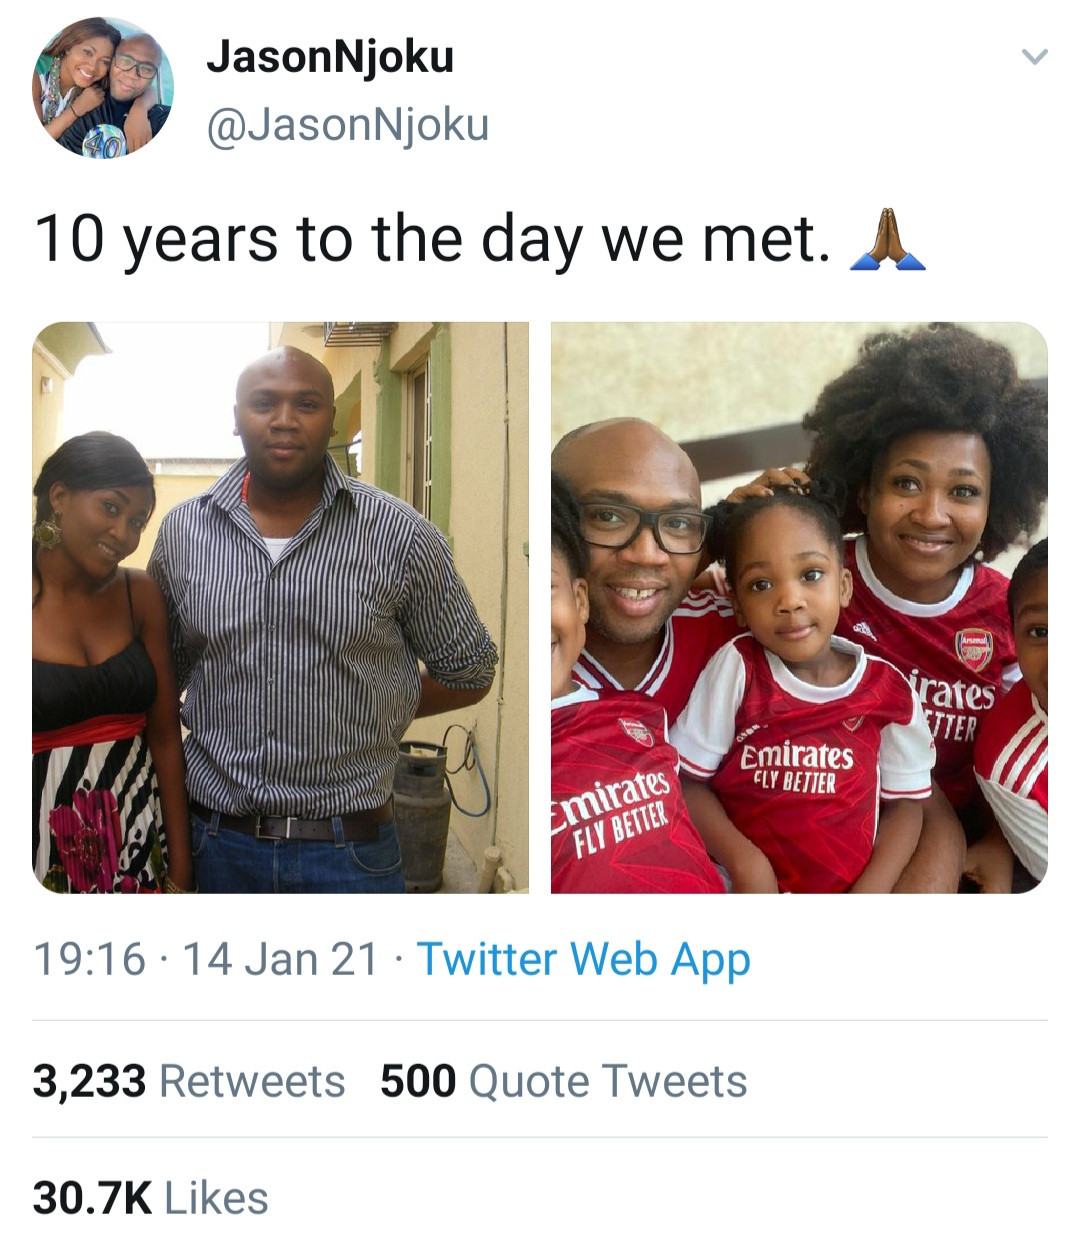 Jason Njoku and his family